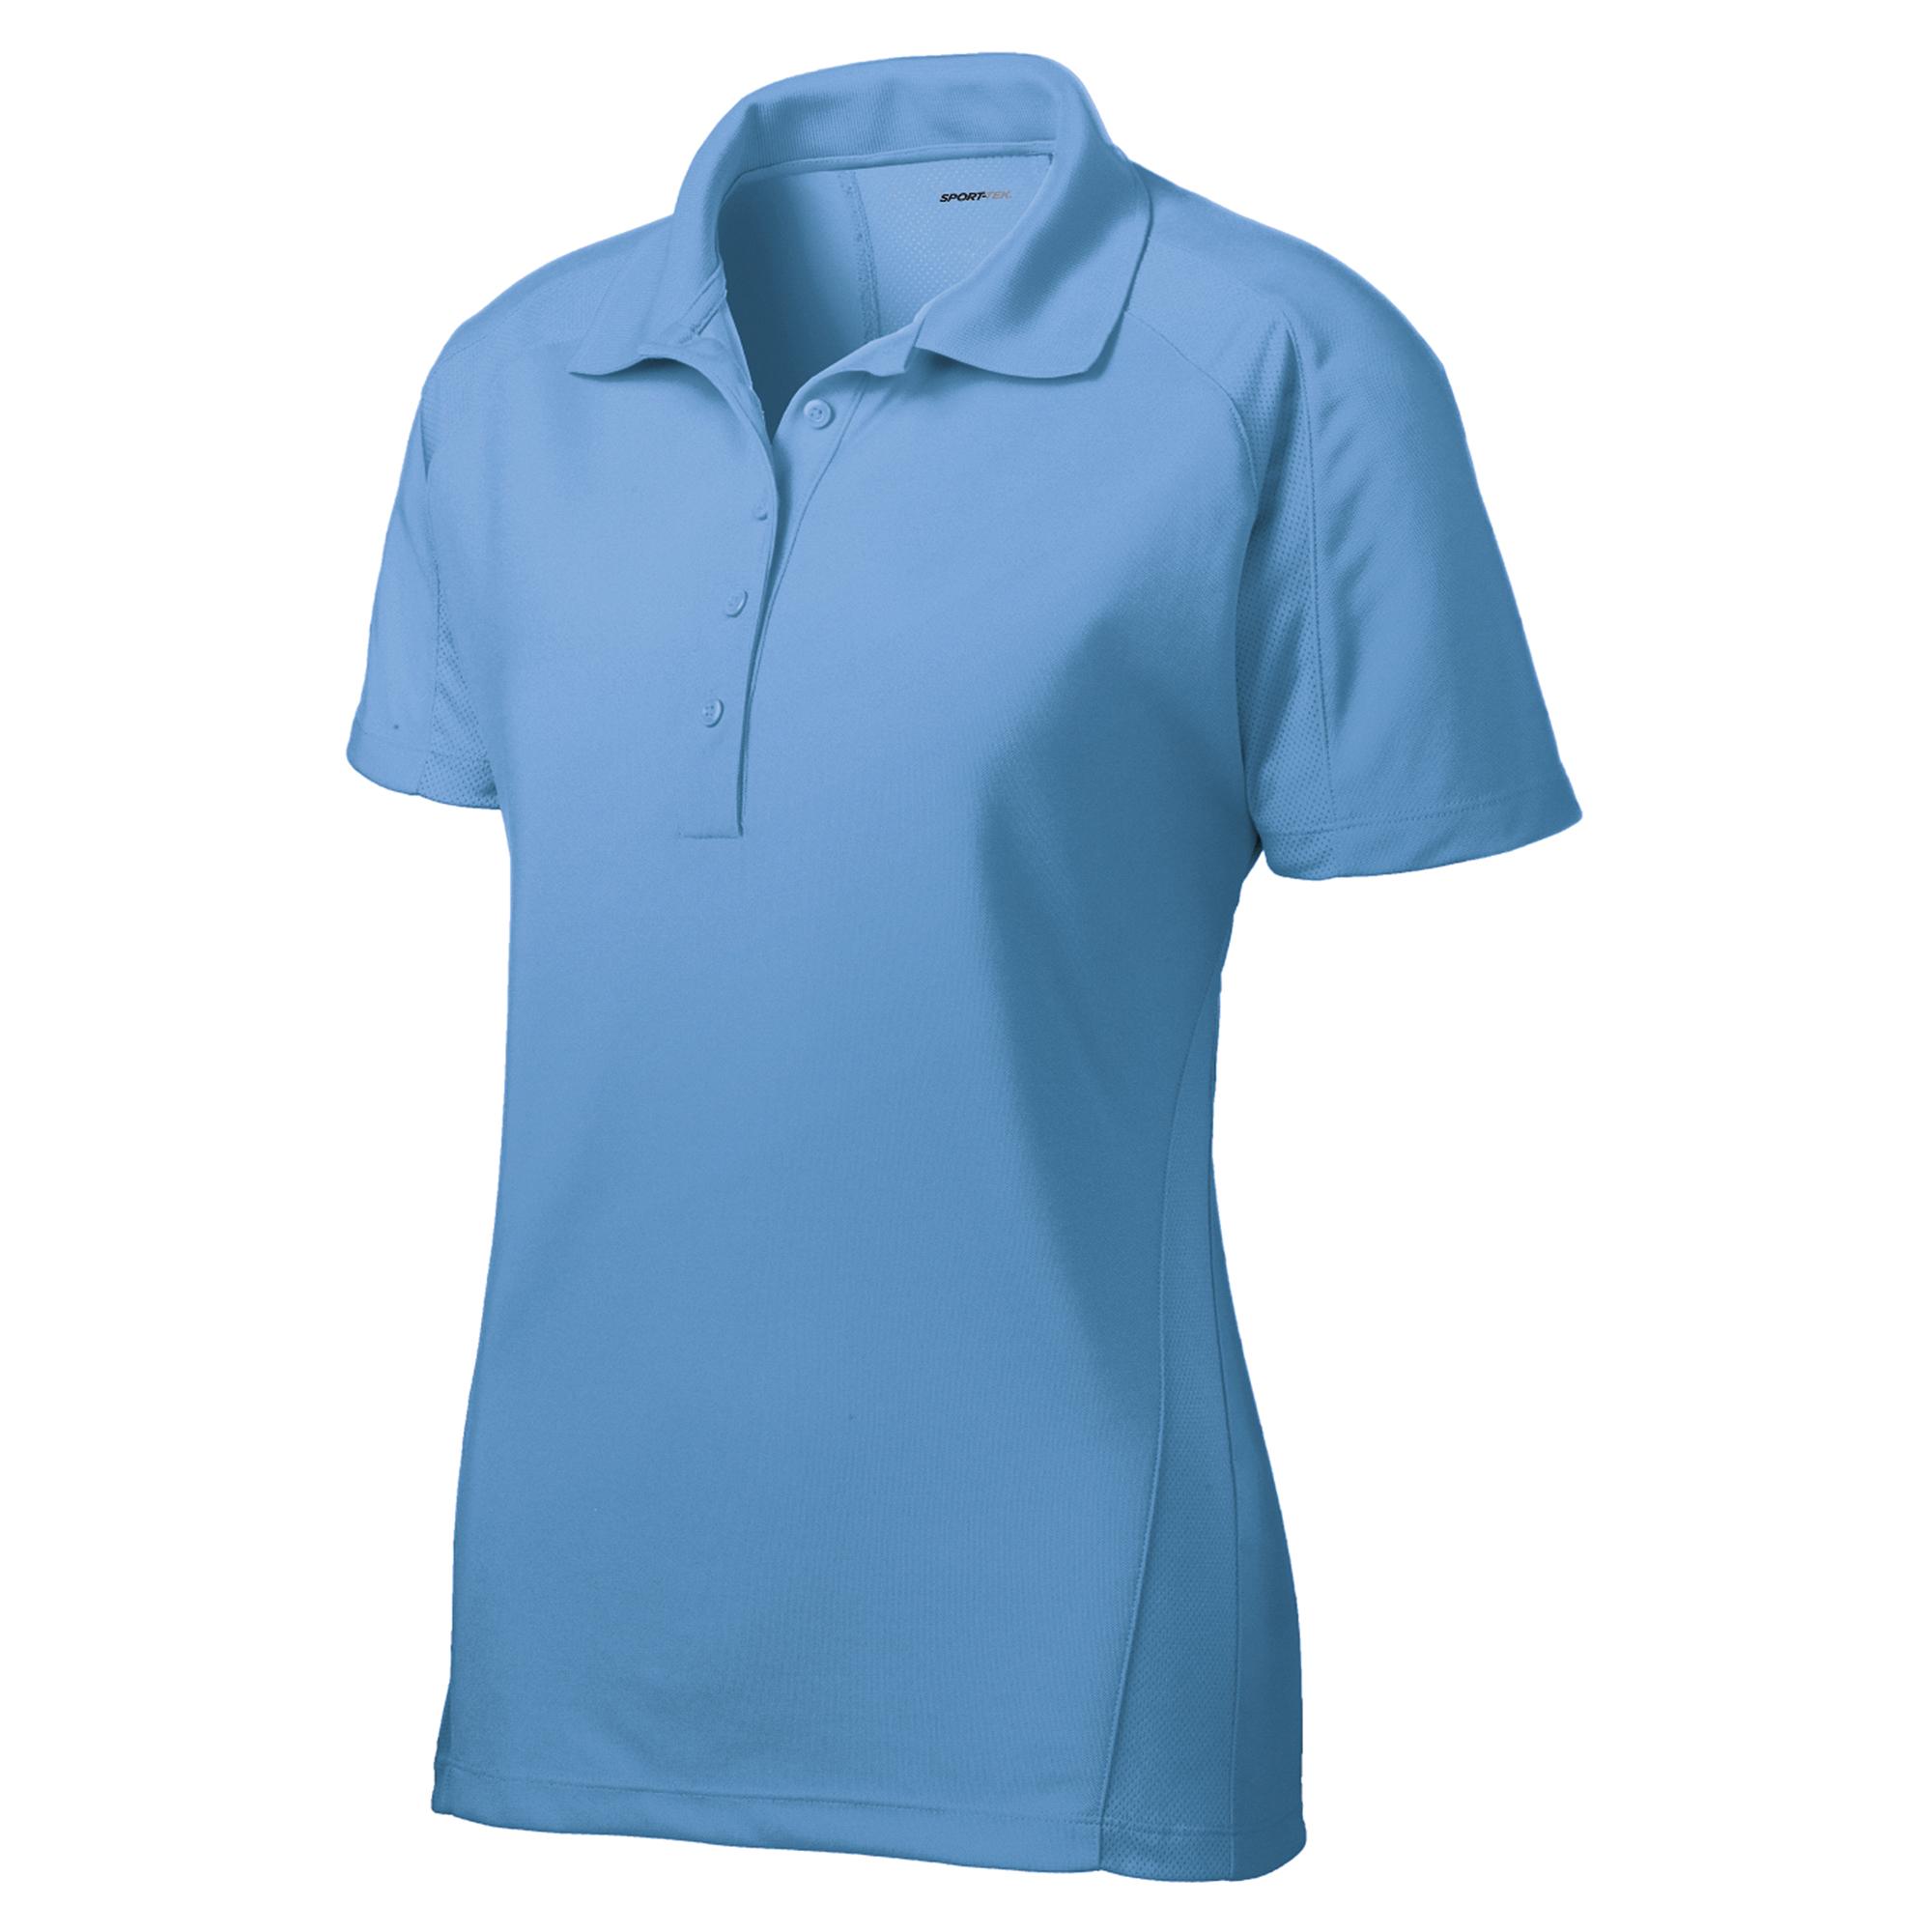 Sport-Tek L474 Ladies Dri-Mesh Pro Polo Shirt - Carolina Blue